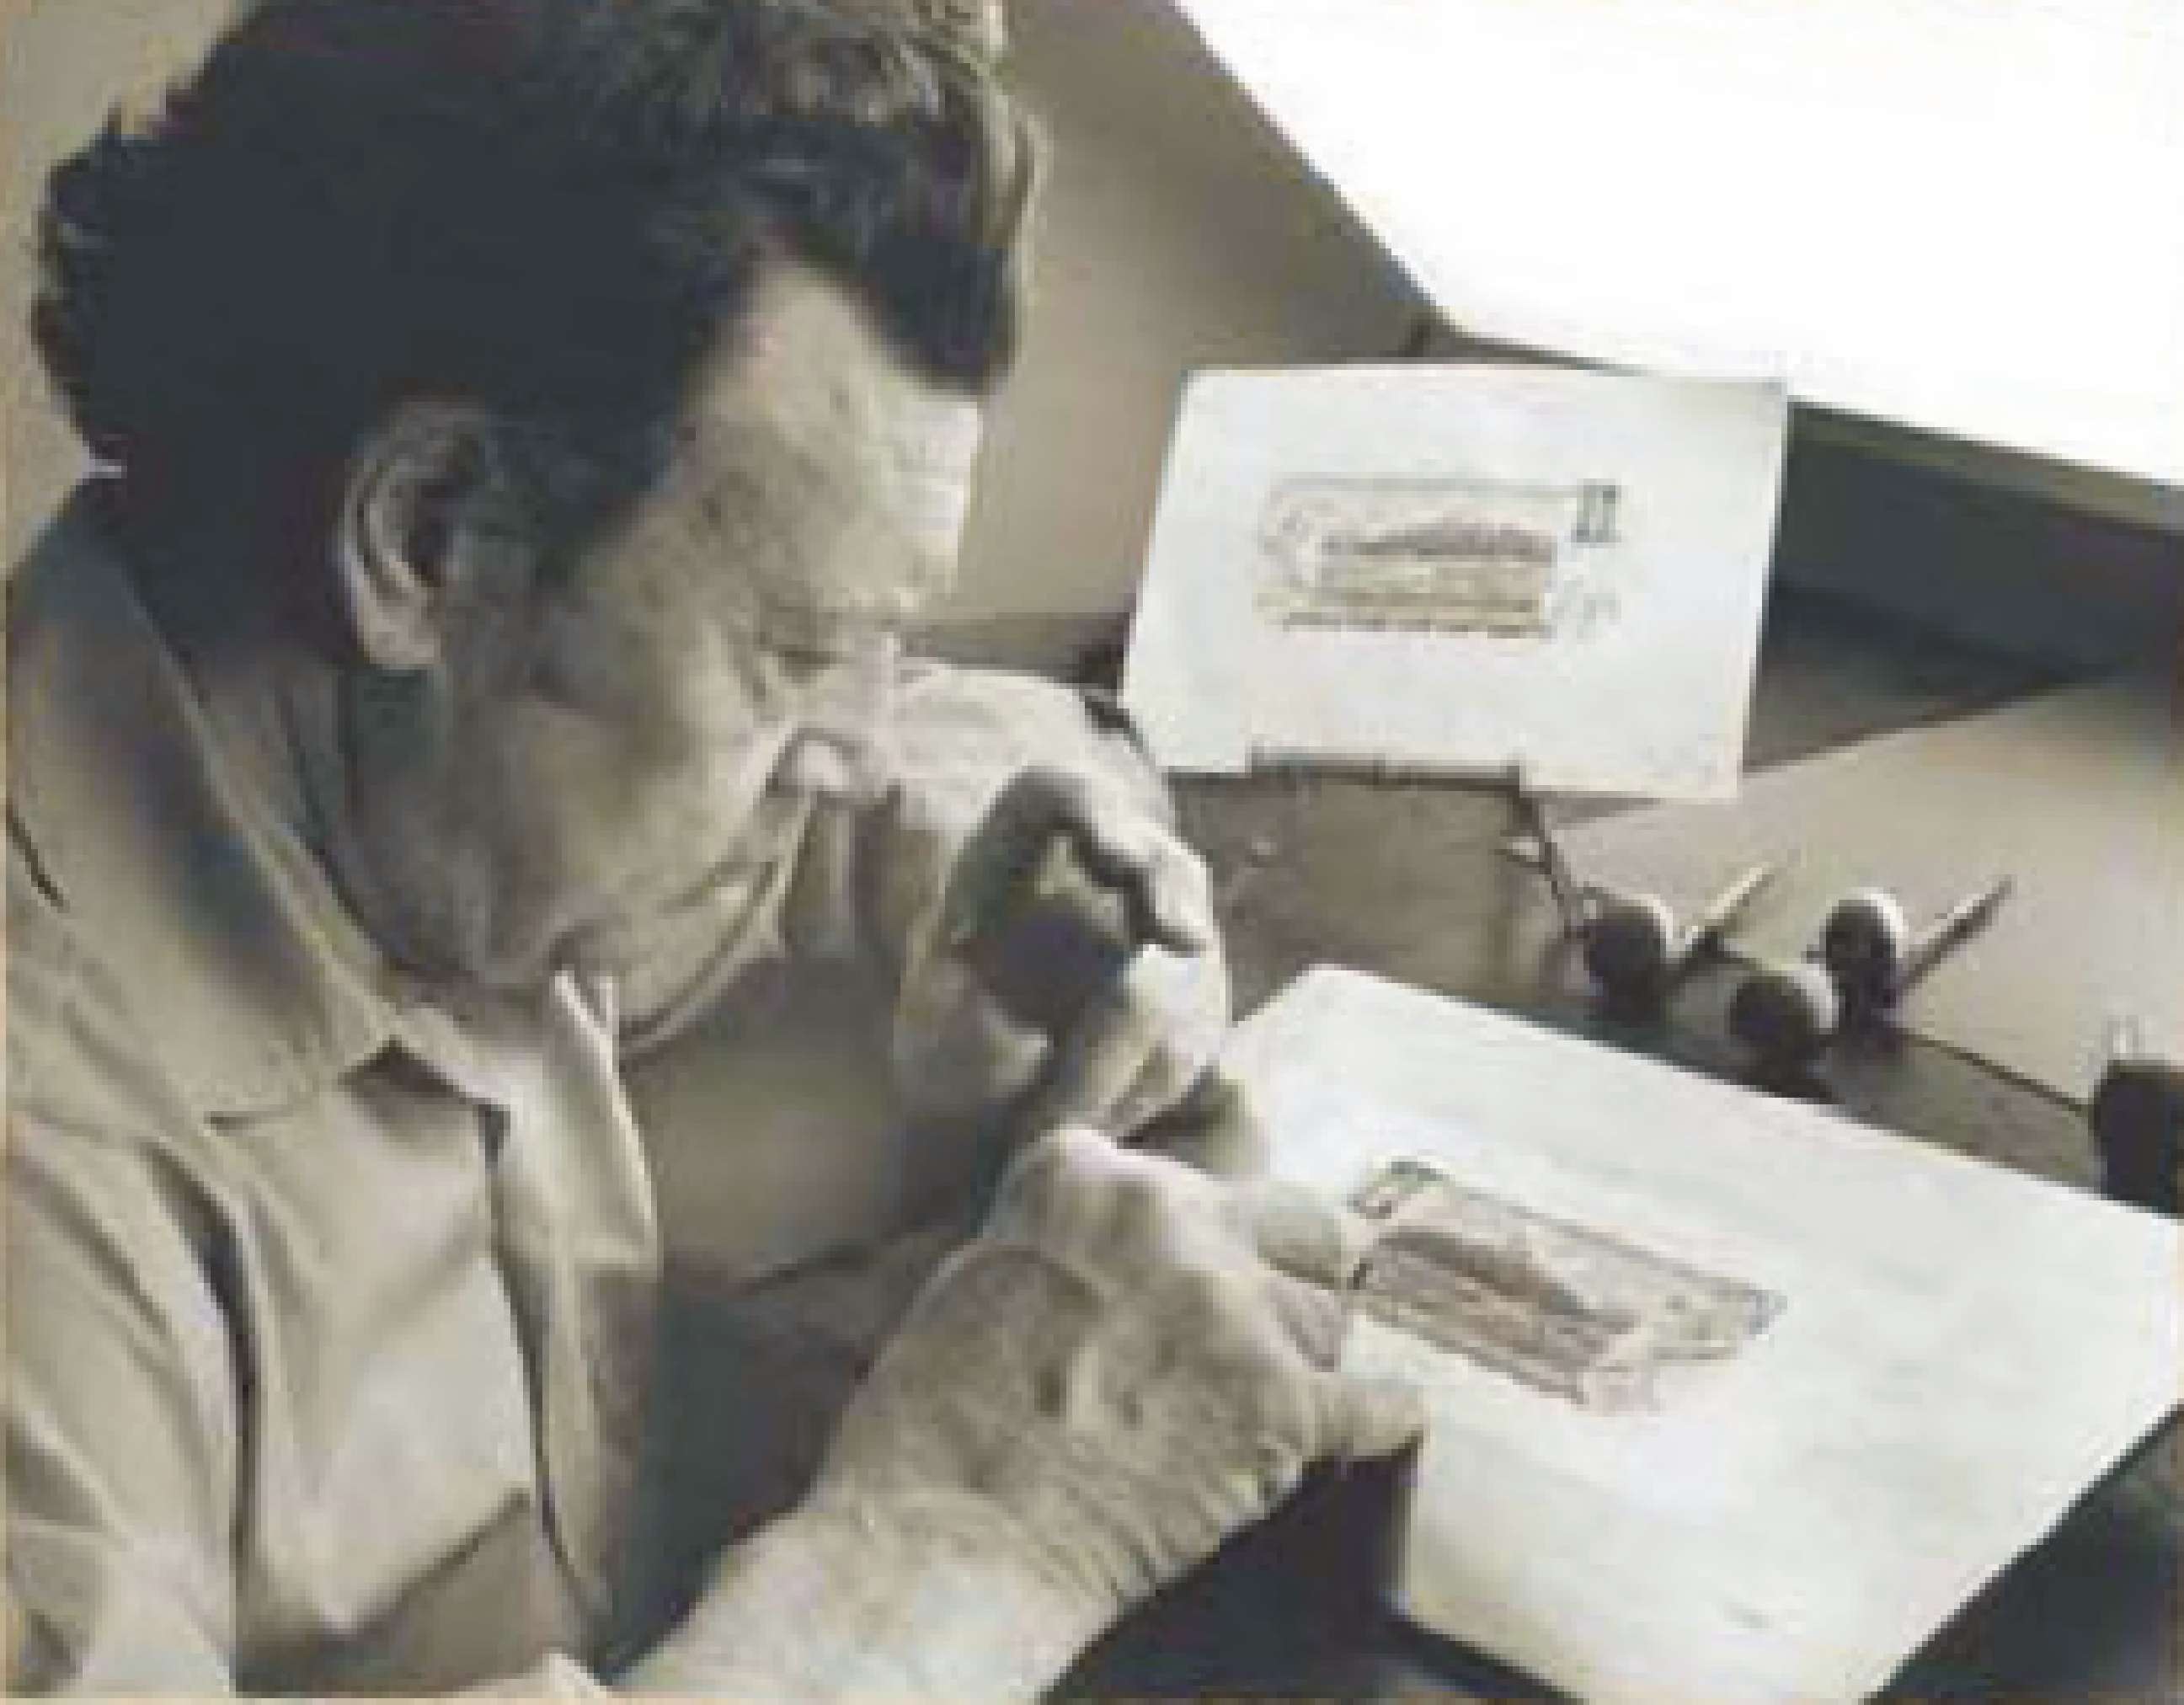  Gordon Yorke engraves a banknote